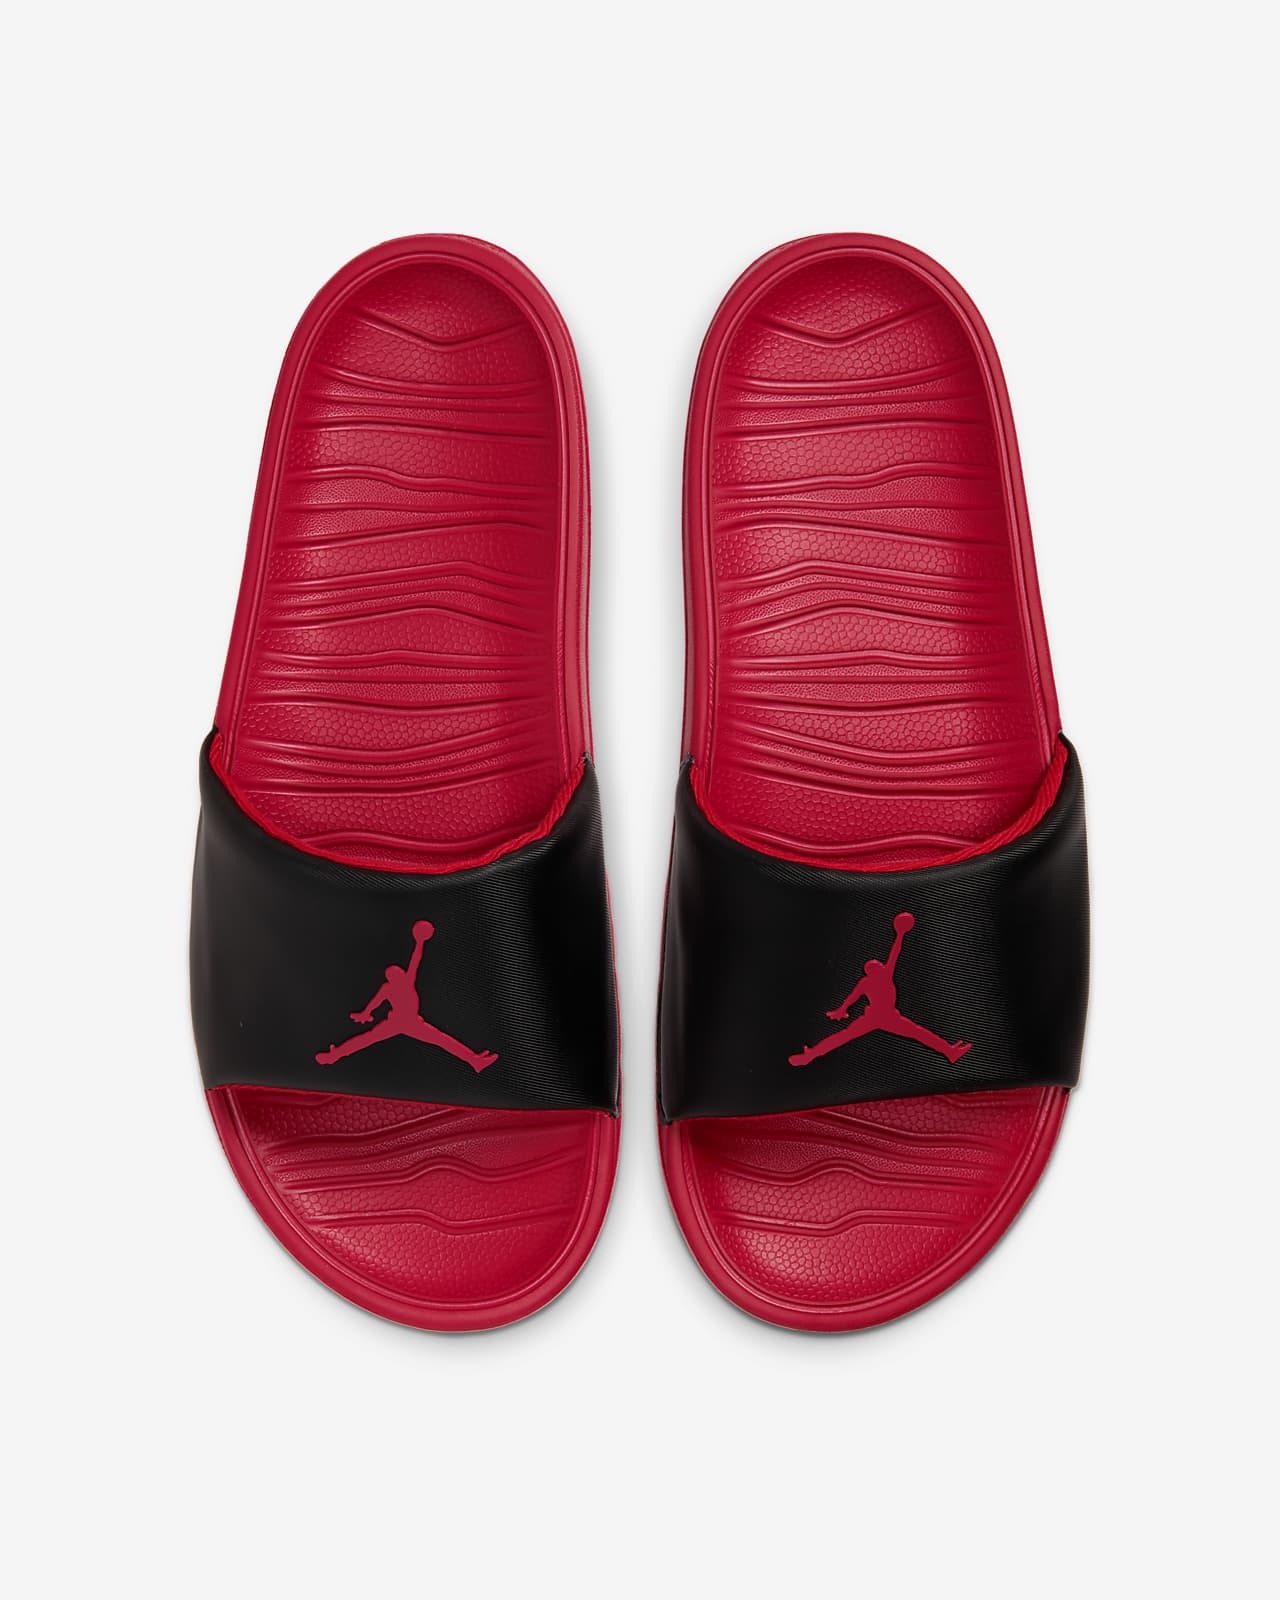 Jordan Break Slide. Nike NL